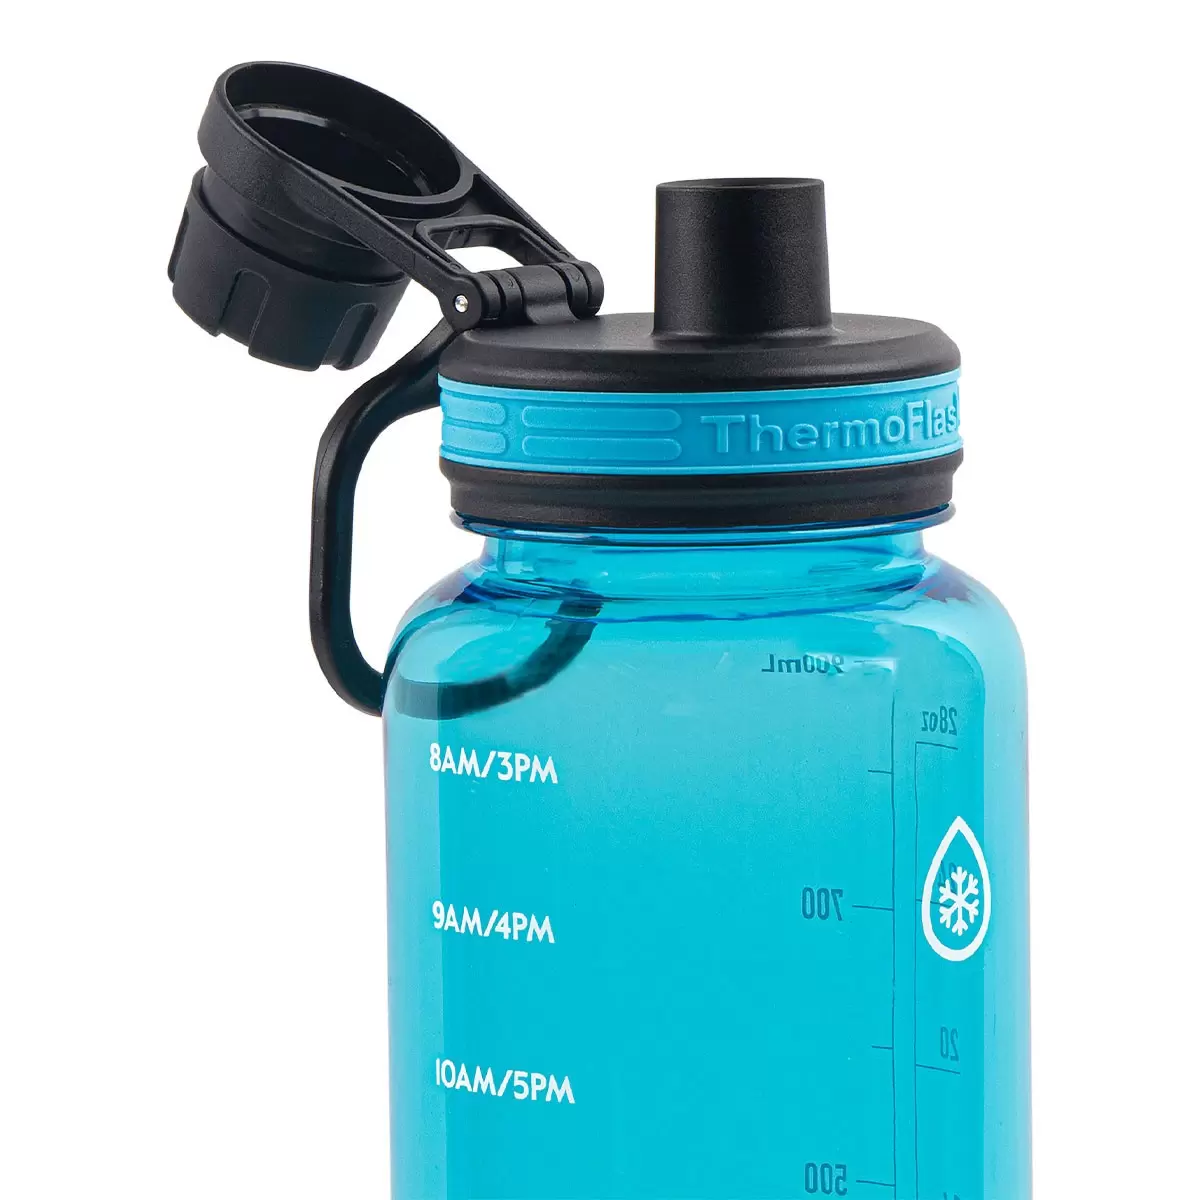 Thermoflask 隨身冷水瓶 950毫升 X 2件組 灰色 + 藍色